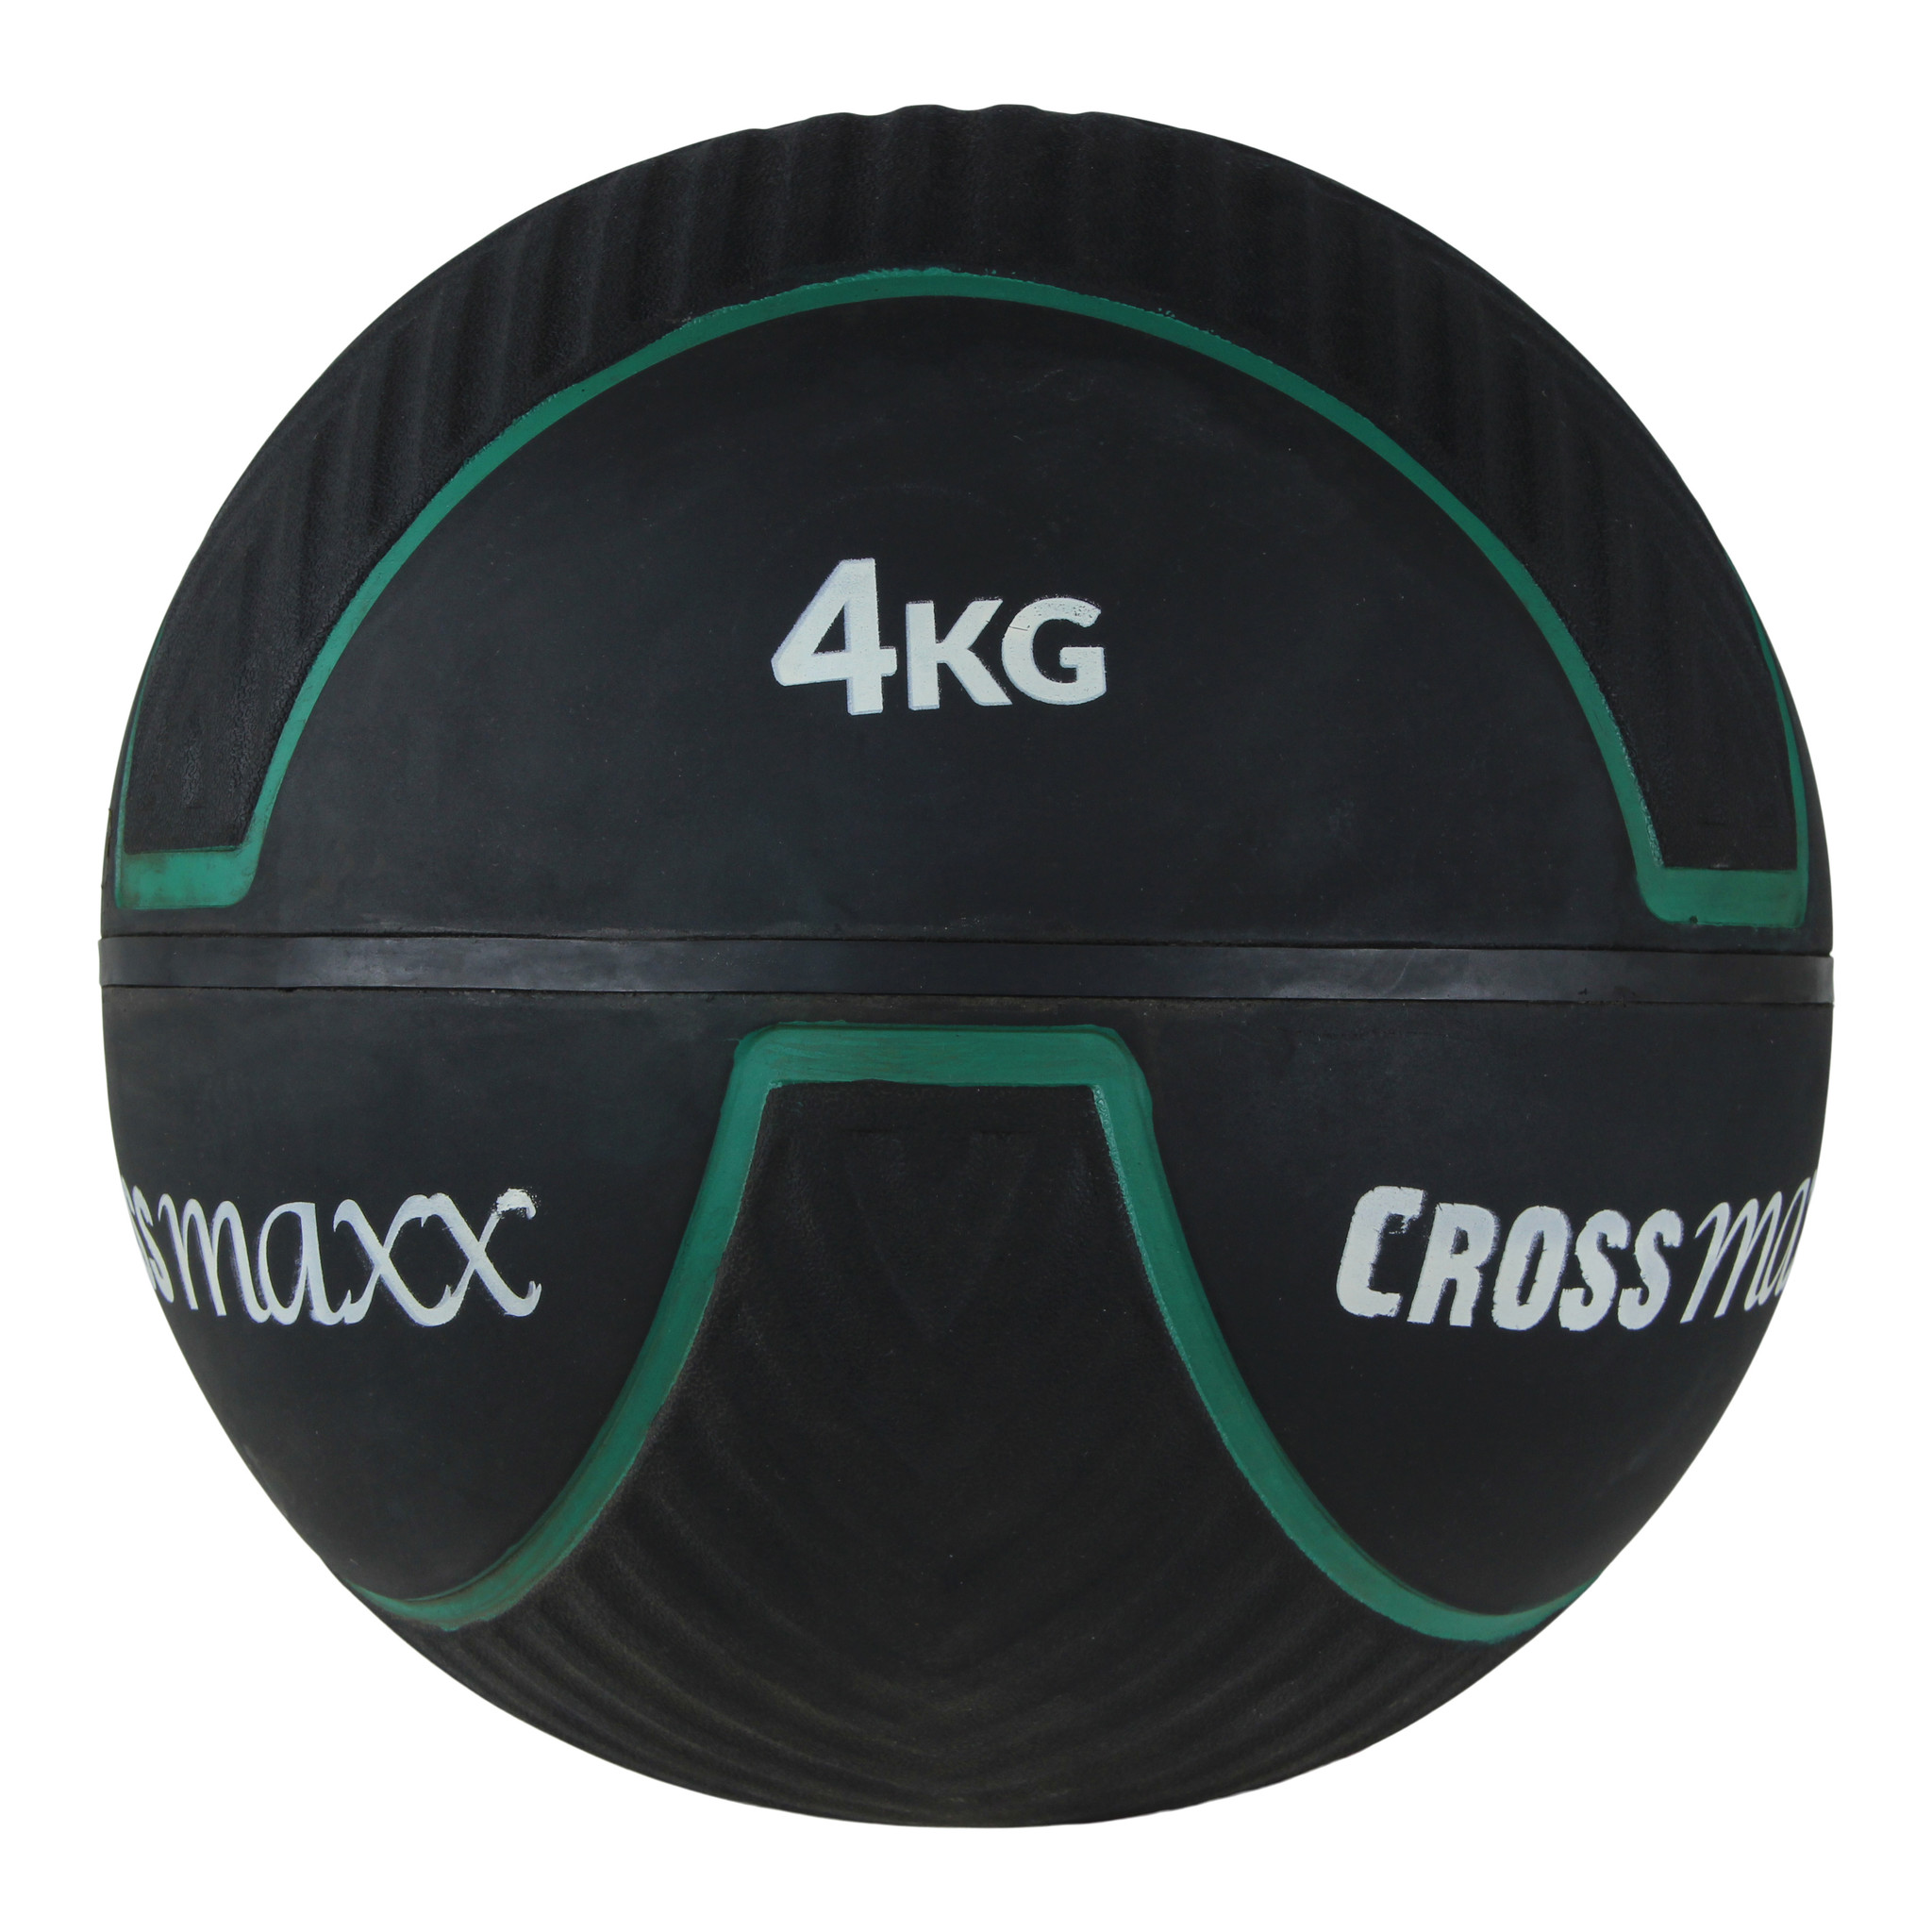 Crossmaxx RBBR Wall Ball 4 kg thumbnail